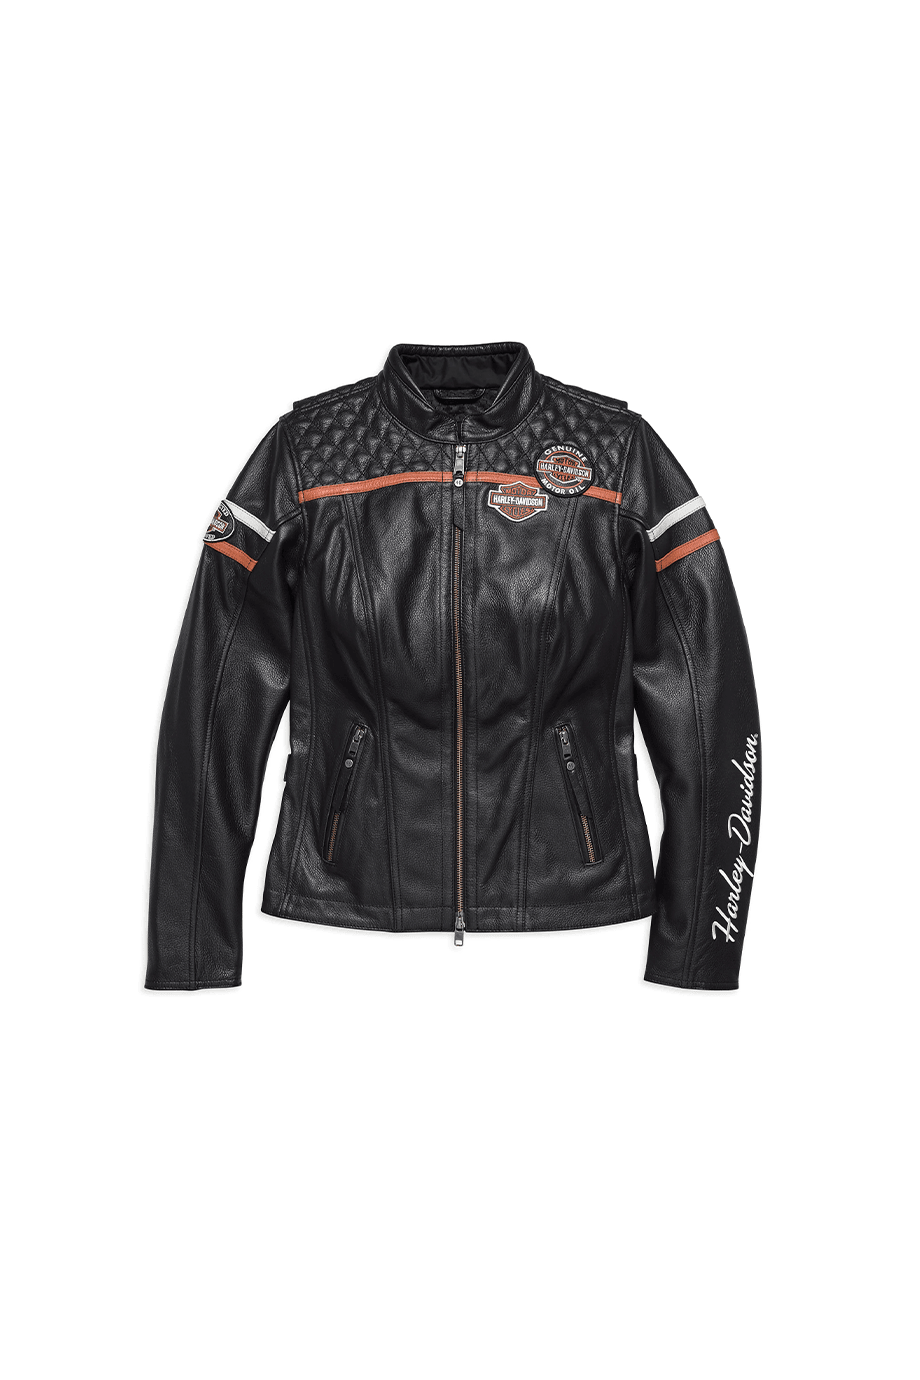 Harley-Davidson® Jacket Gmic Miss Enthus Iast